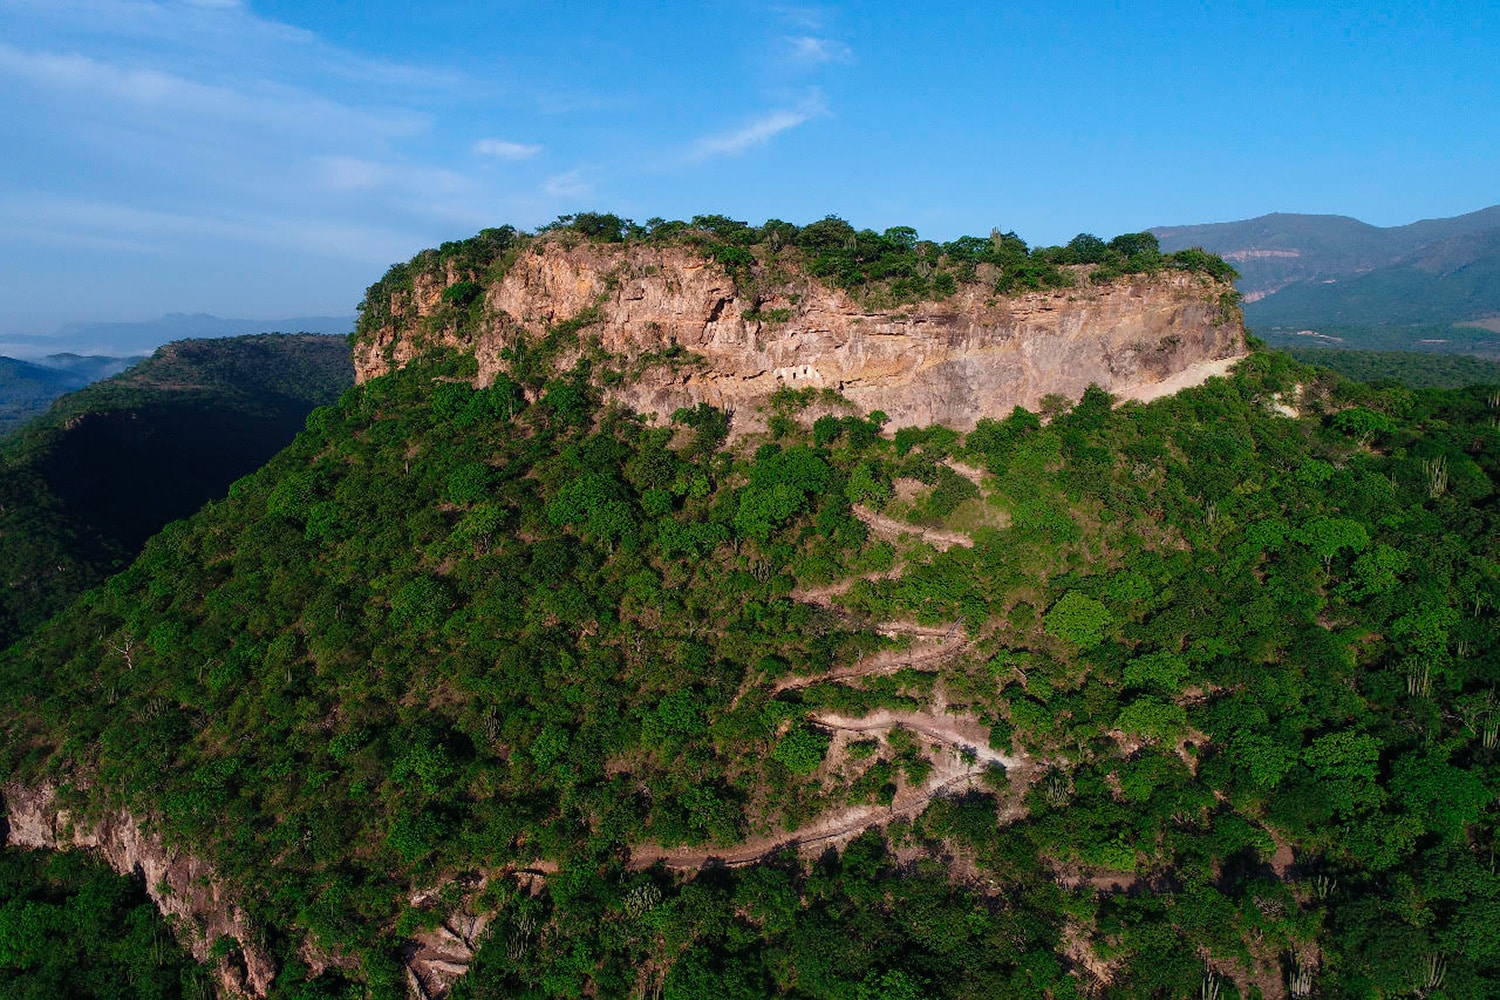 Zona Arqueológica Cerro de las Ventanas reabre bajo nueva normalidad